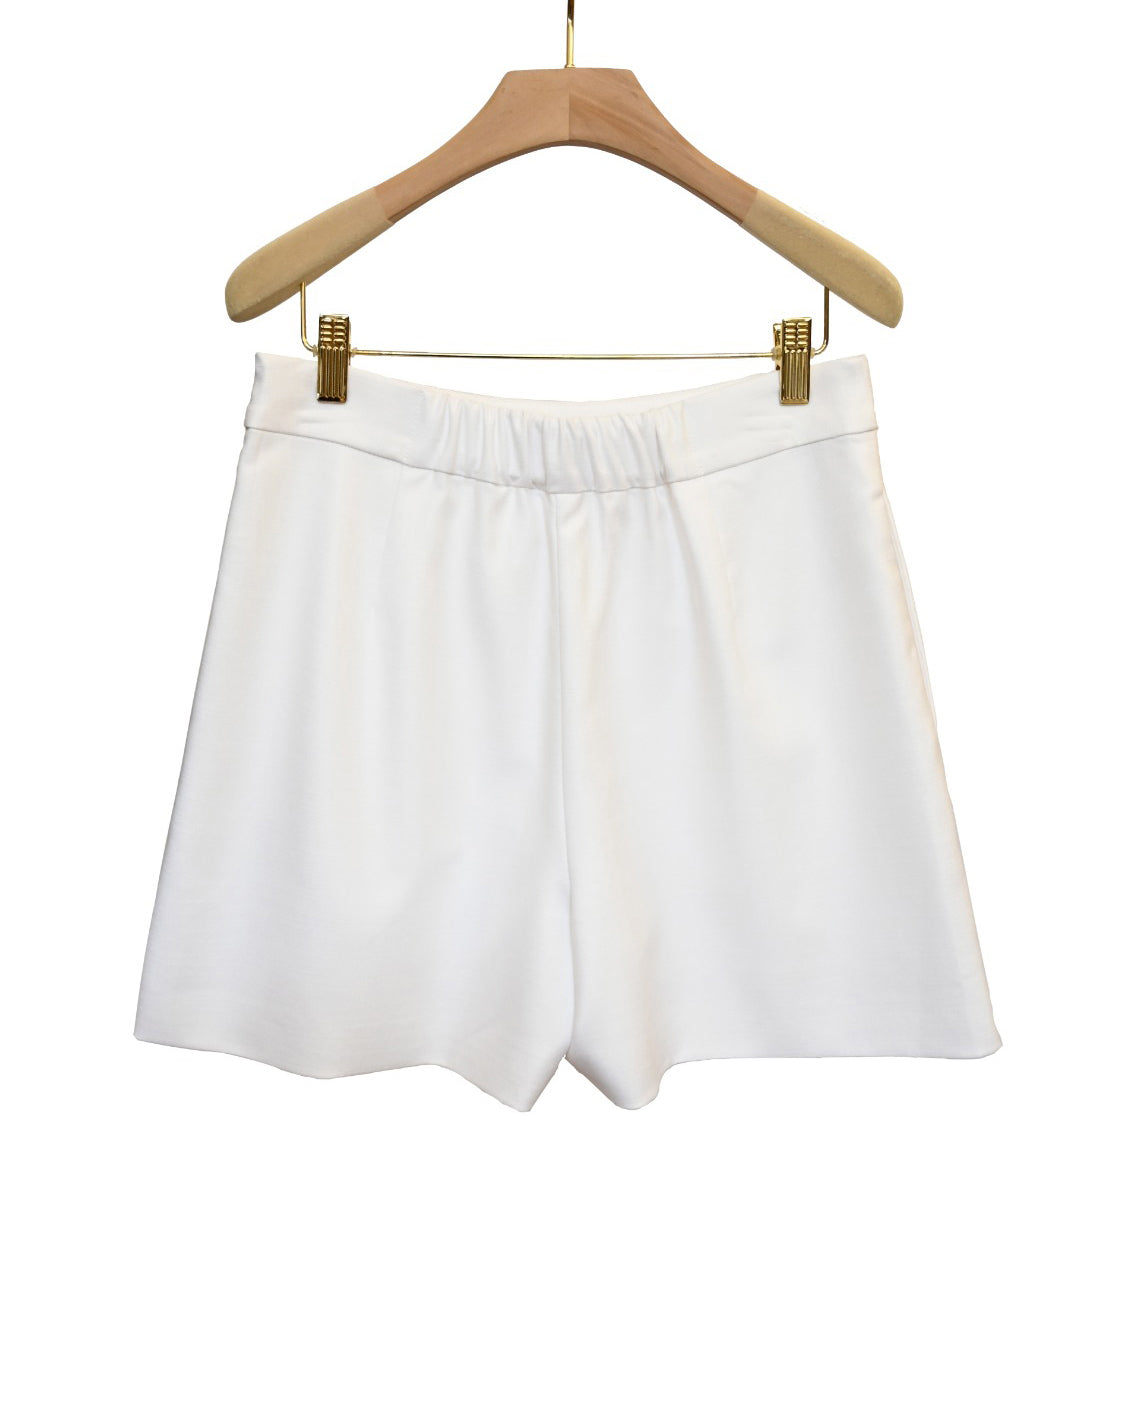 aalis GARANT single pocket skirt (White)